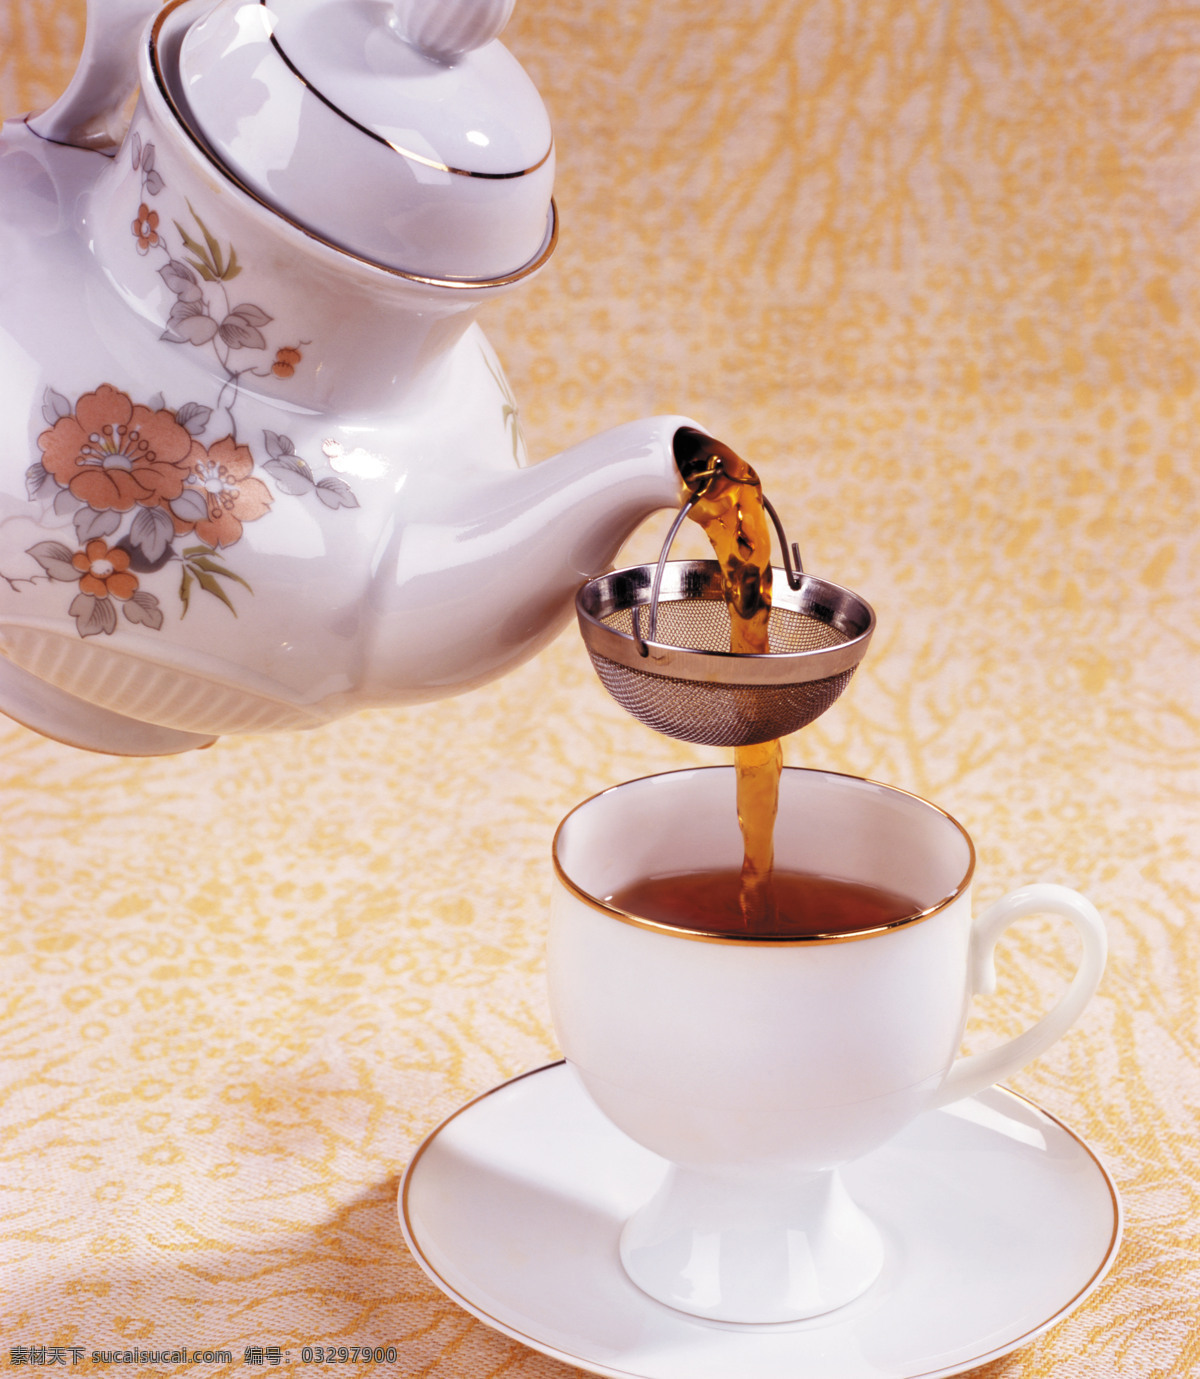 倒 茶 瞬间 茶叶 茶水 茶杯 倒茶 温馨 休闲 餐饮美食 特写 摄影图 茶道图片